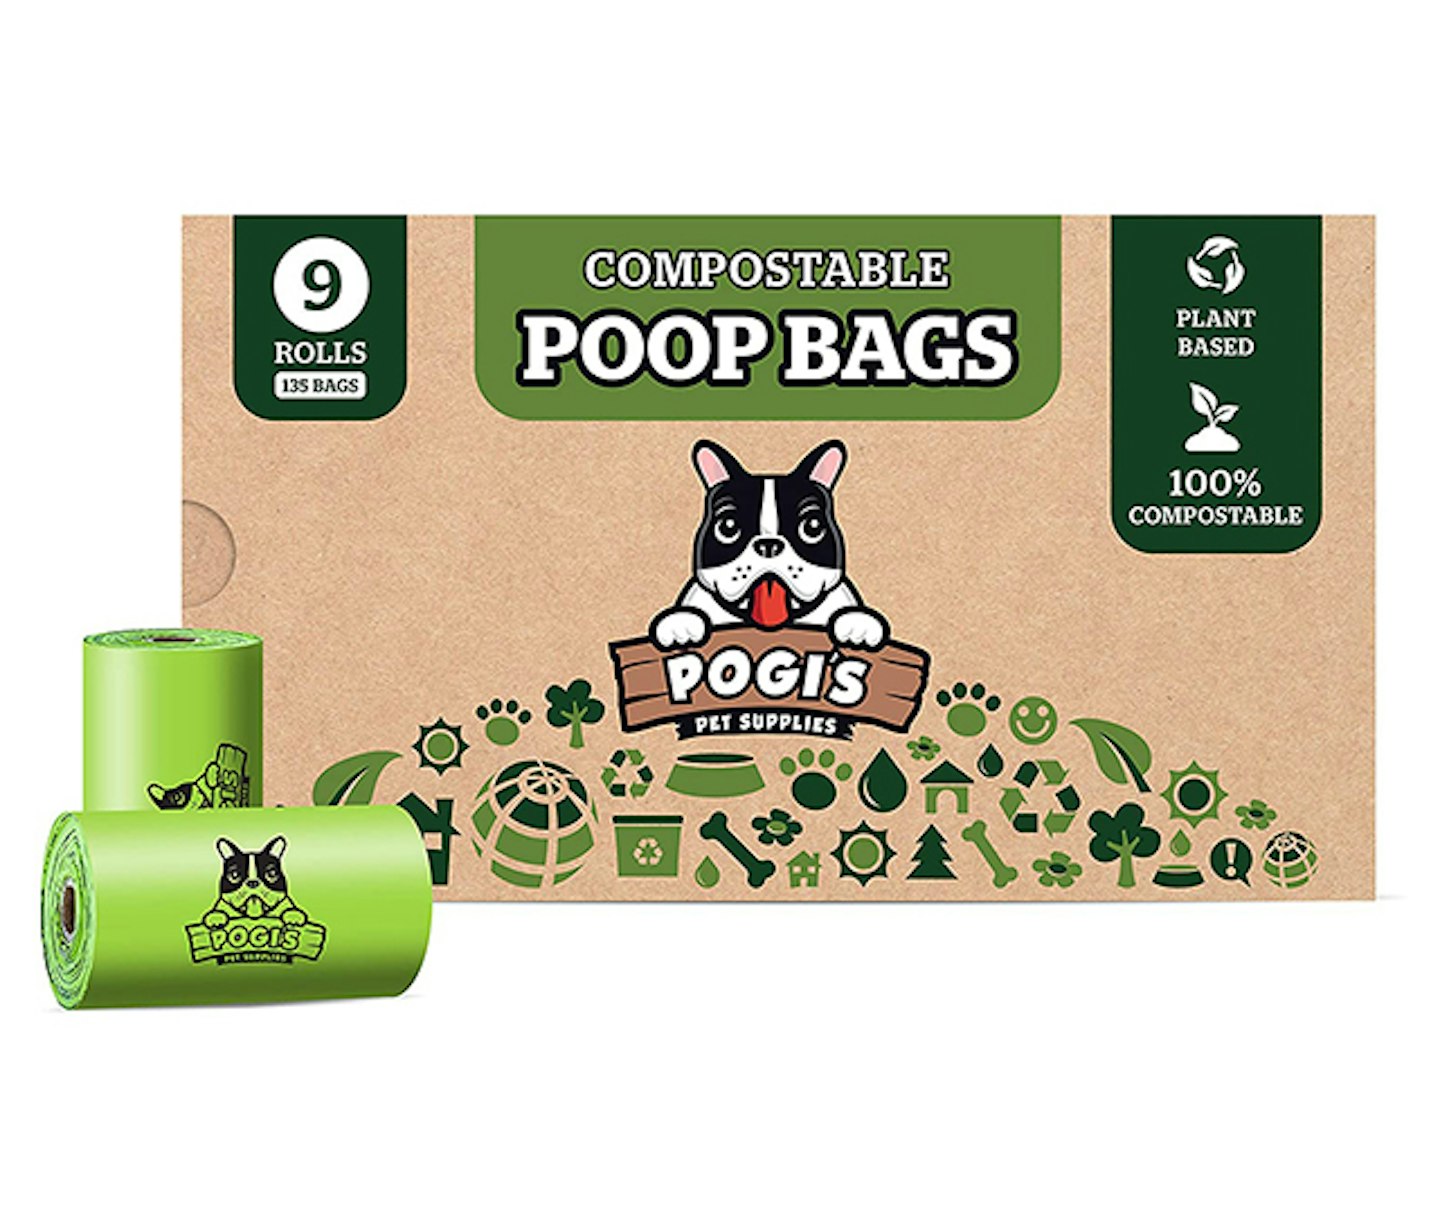 Pogi's Compostable dog poo bags